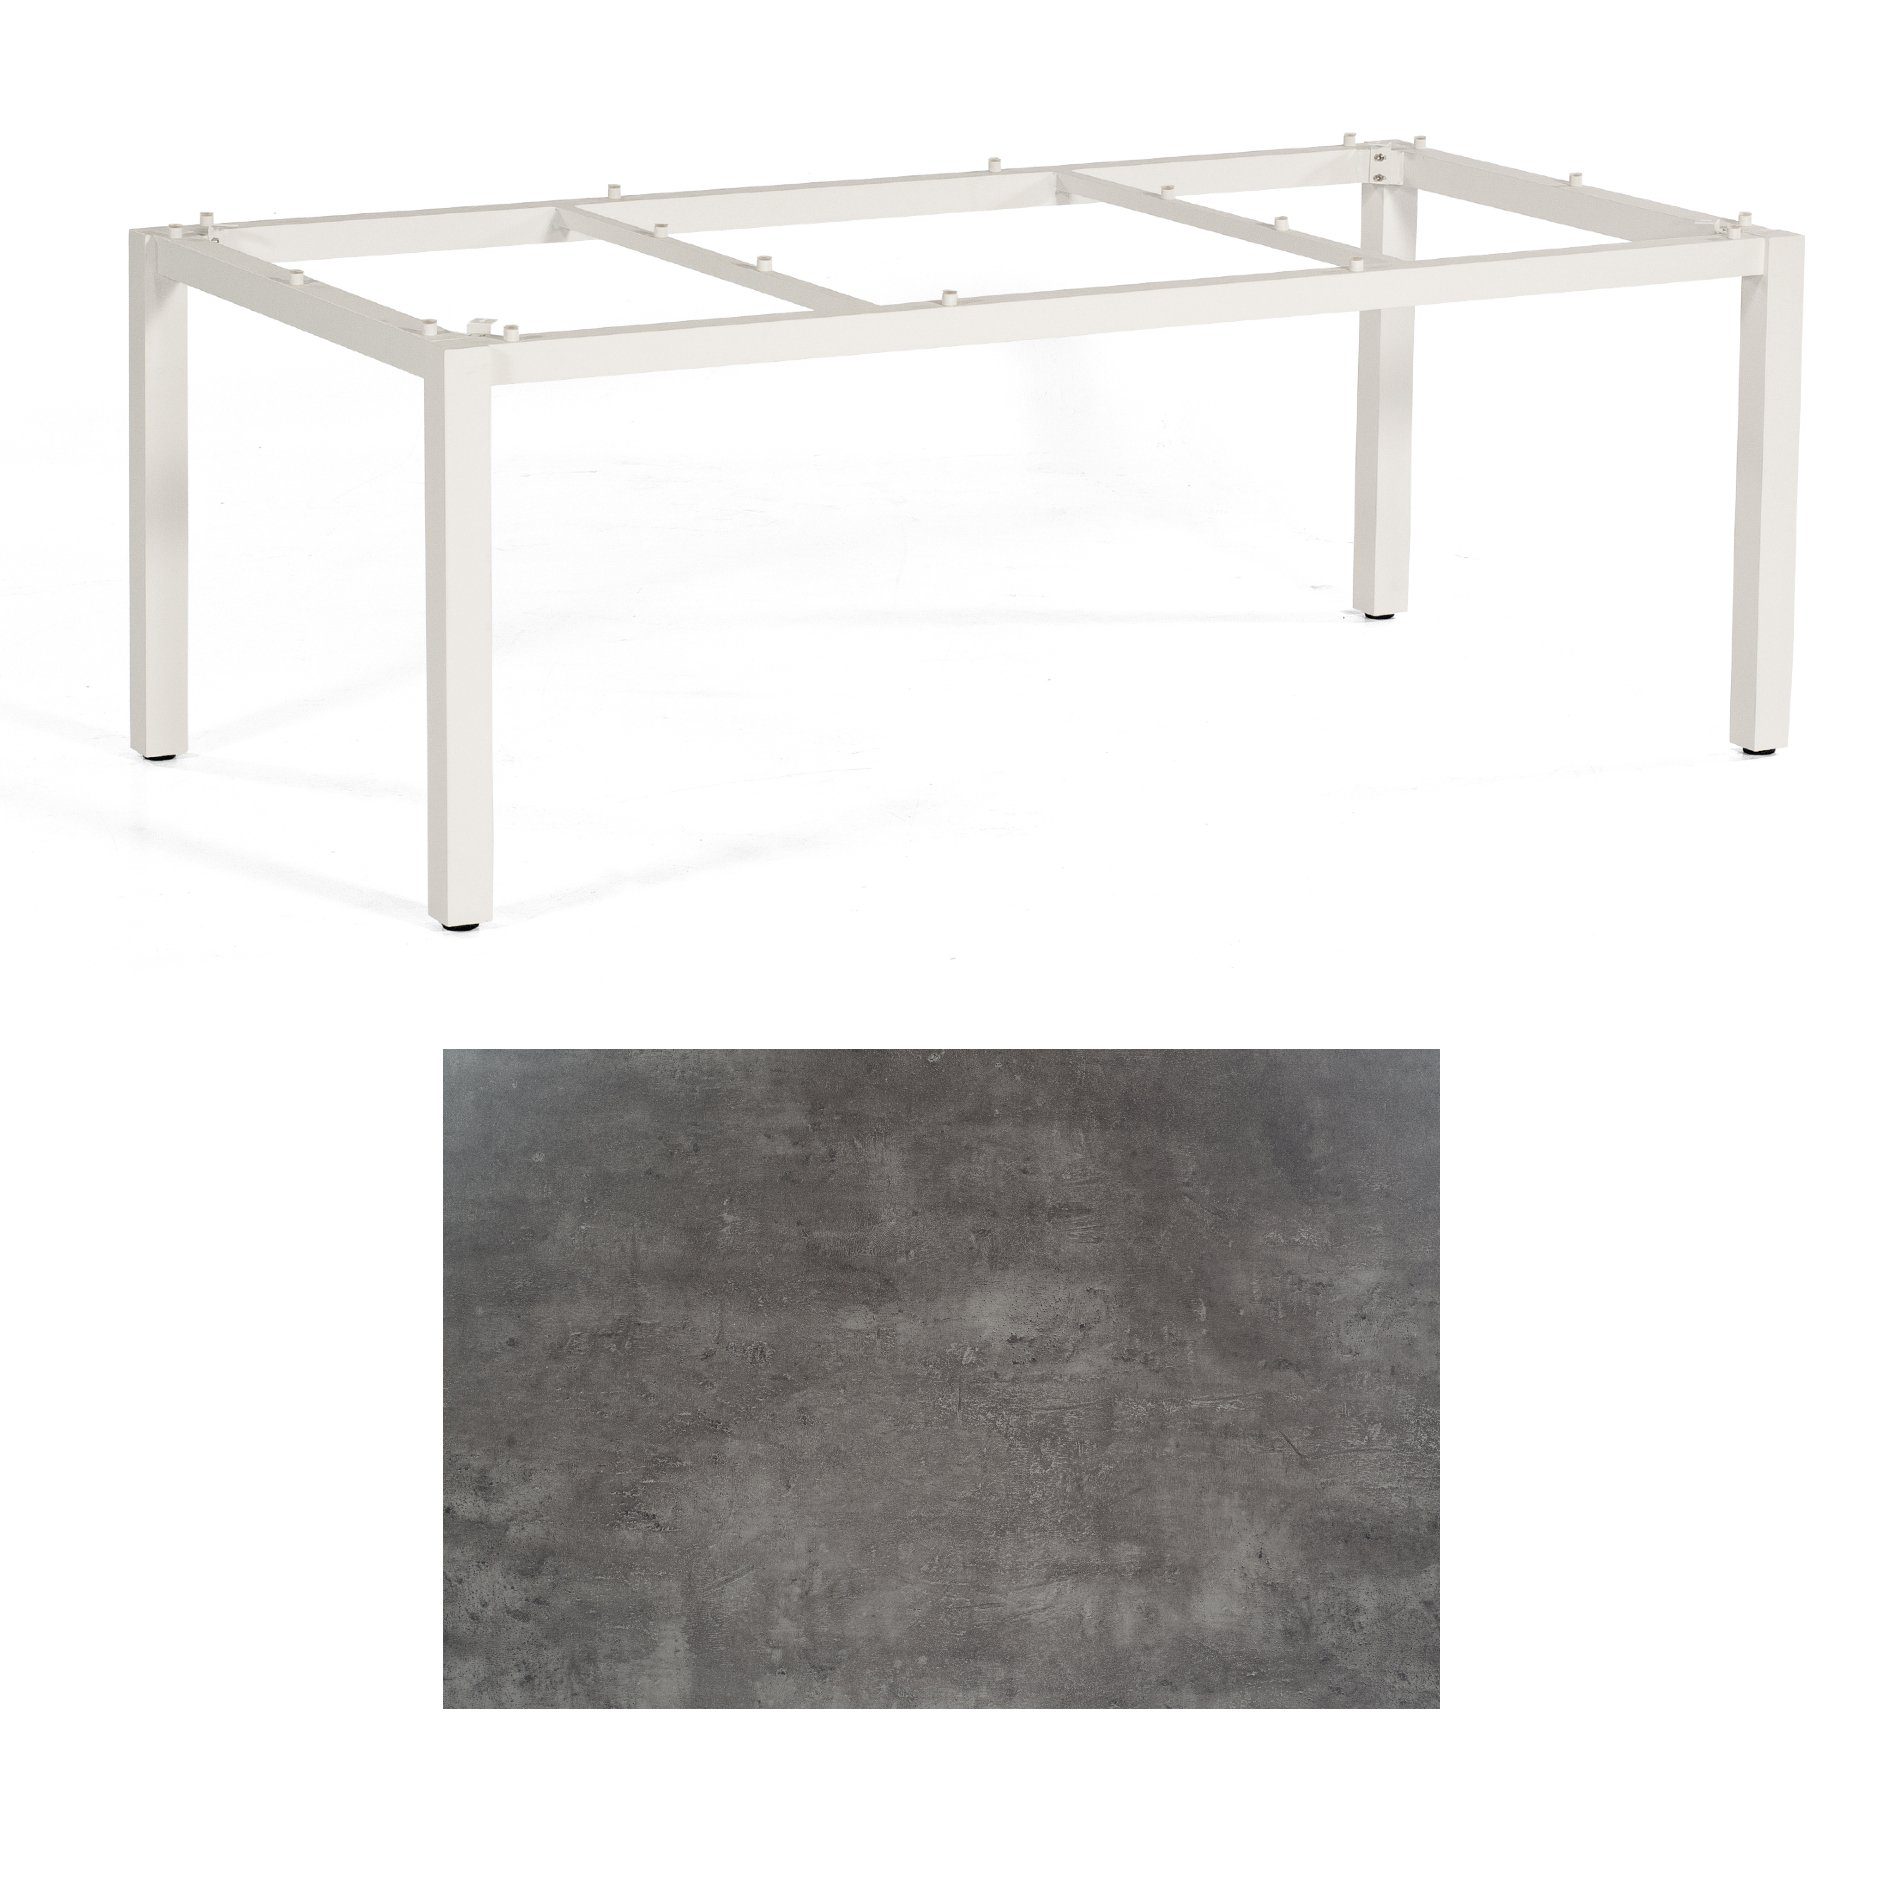 SonnenPartner Tisch „Base“, Gestell Aluminium weiß, Tischplatte HPL Beton dunkel, 200x100 cm